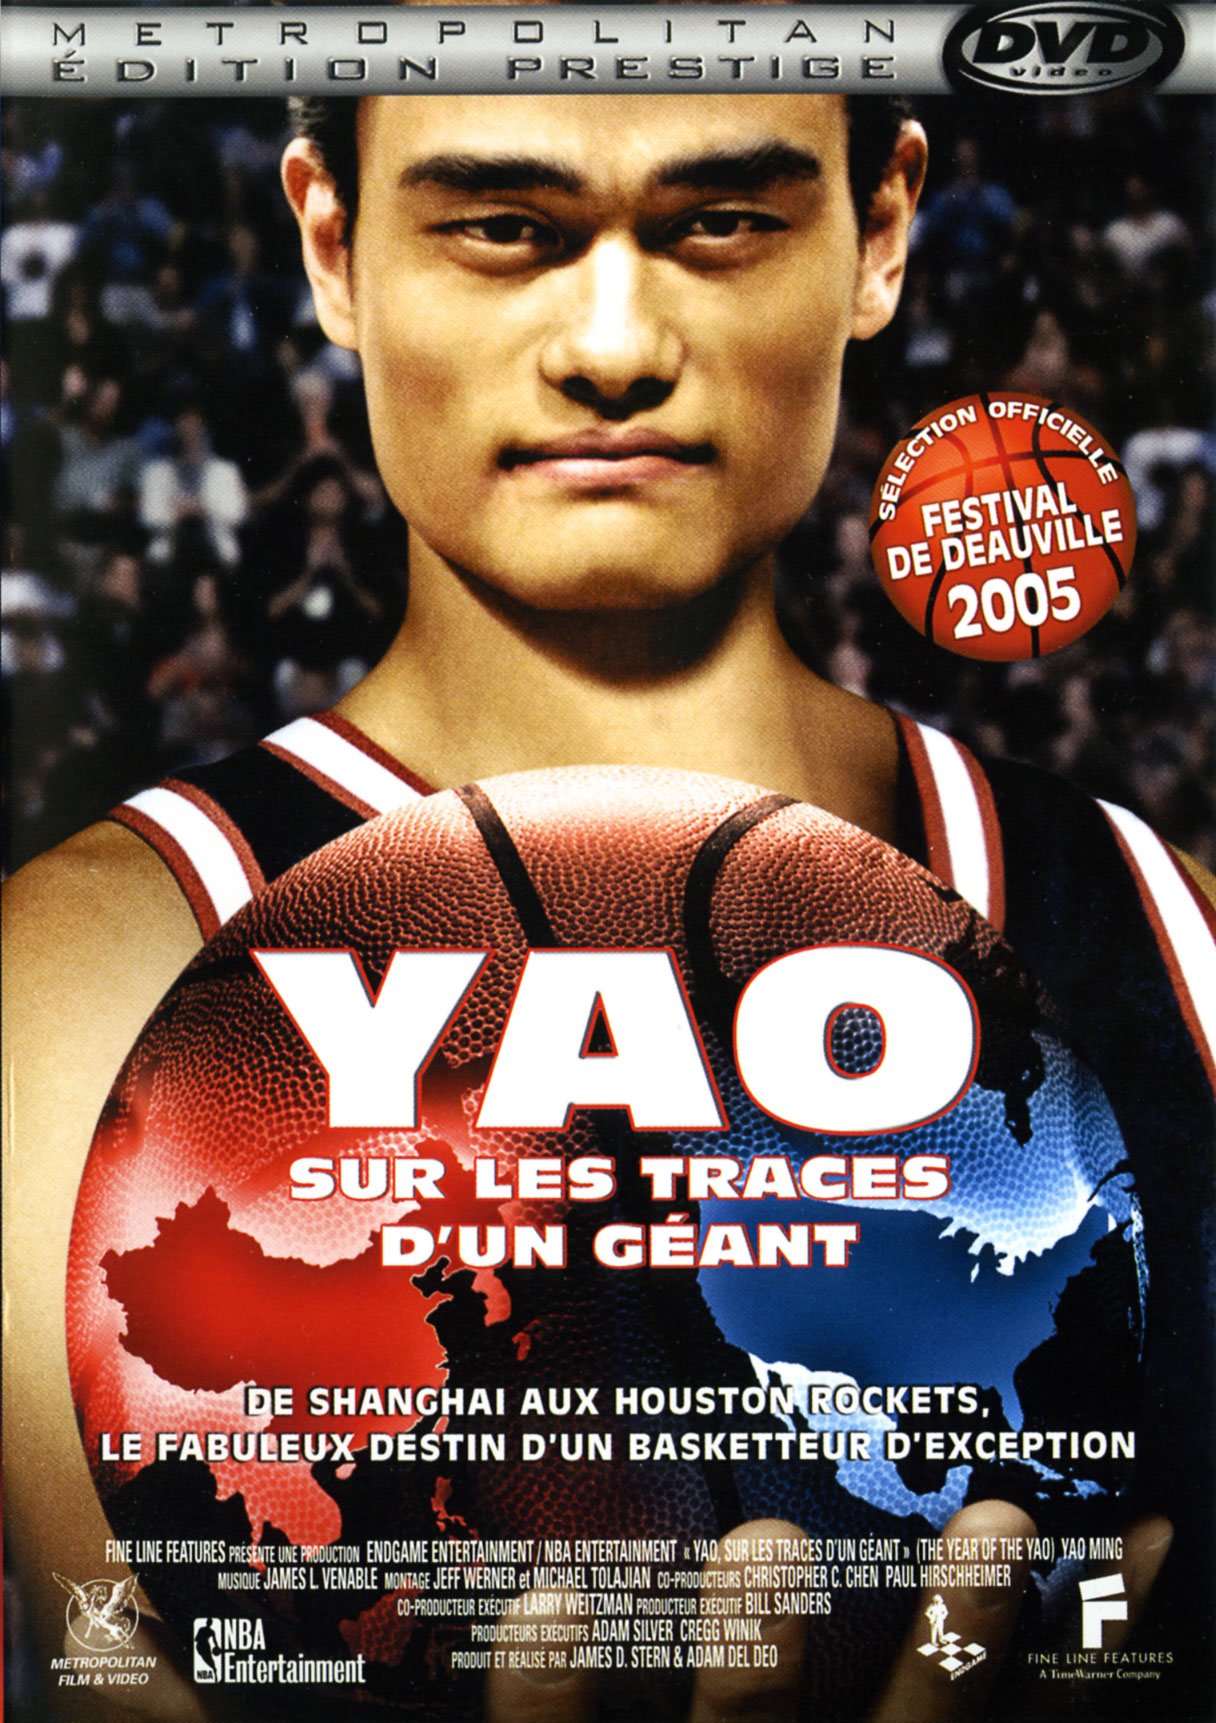 Yao sur les traces d'un géant (Edition Prestige)